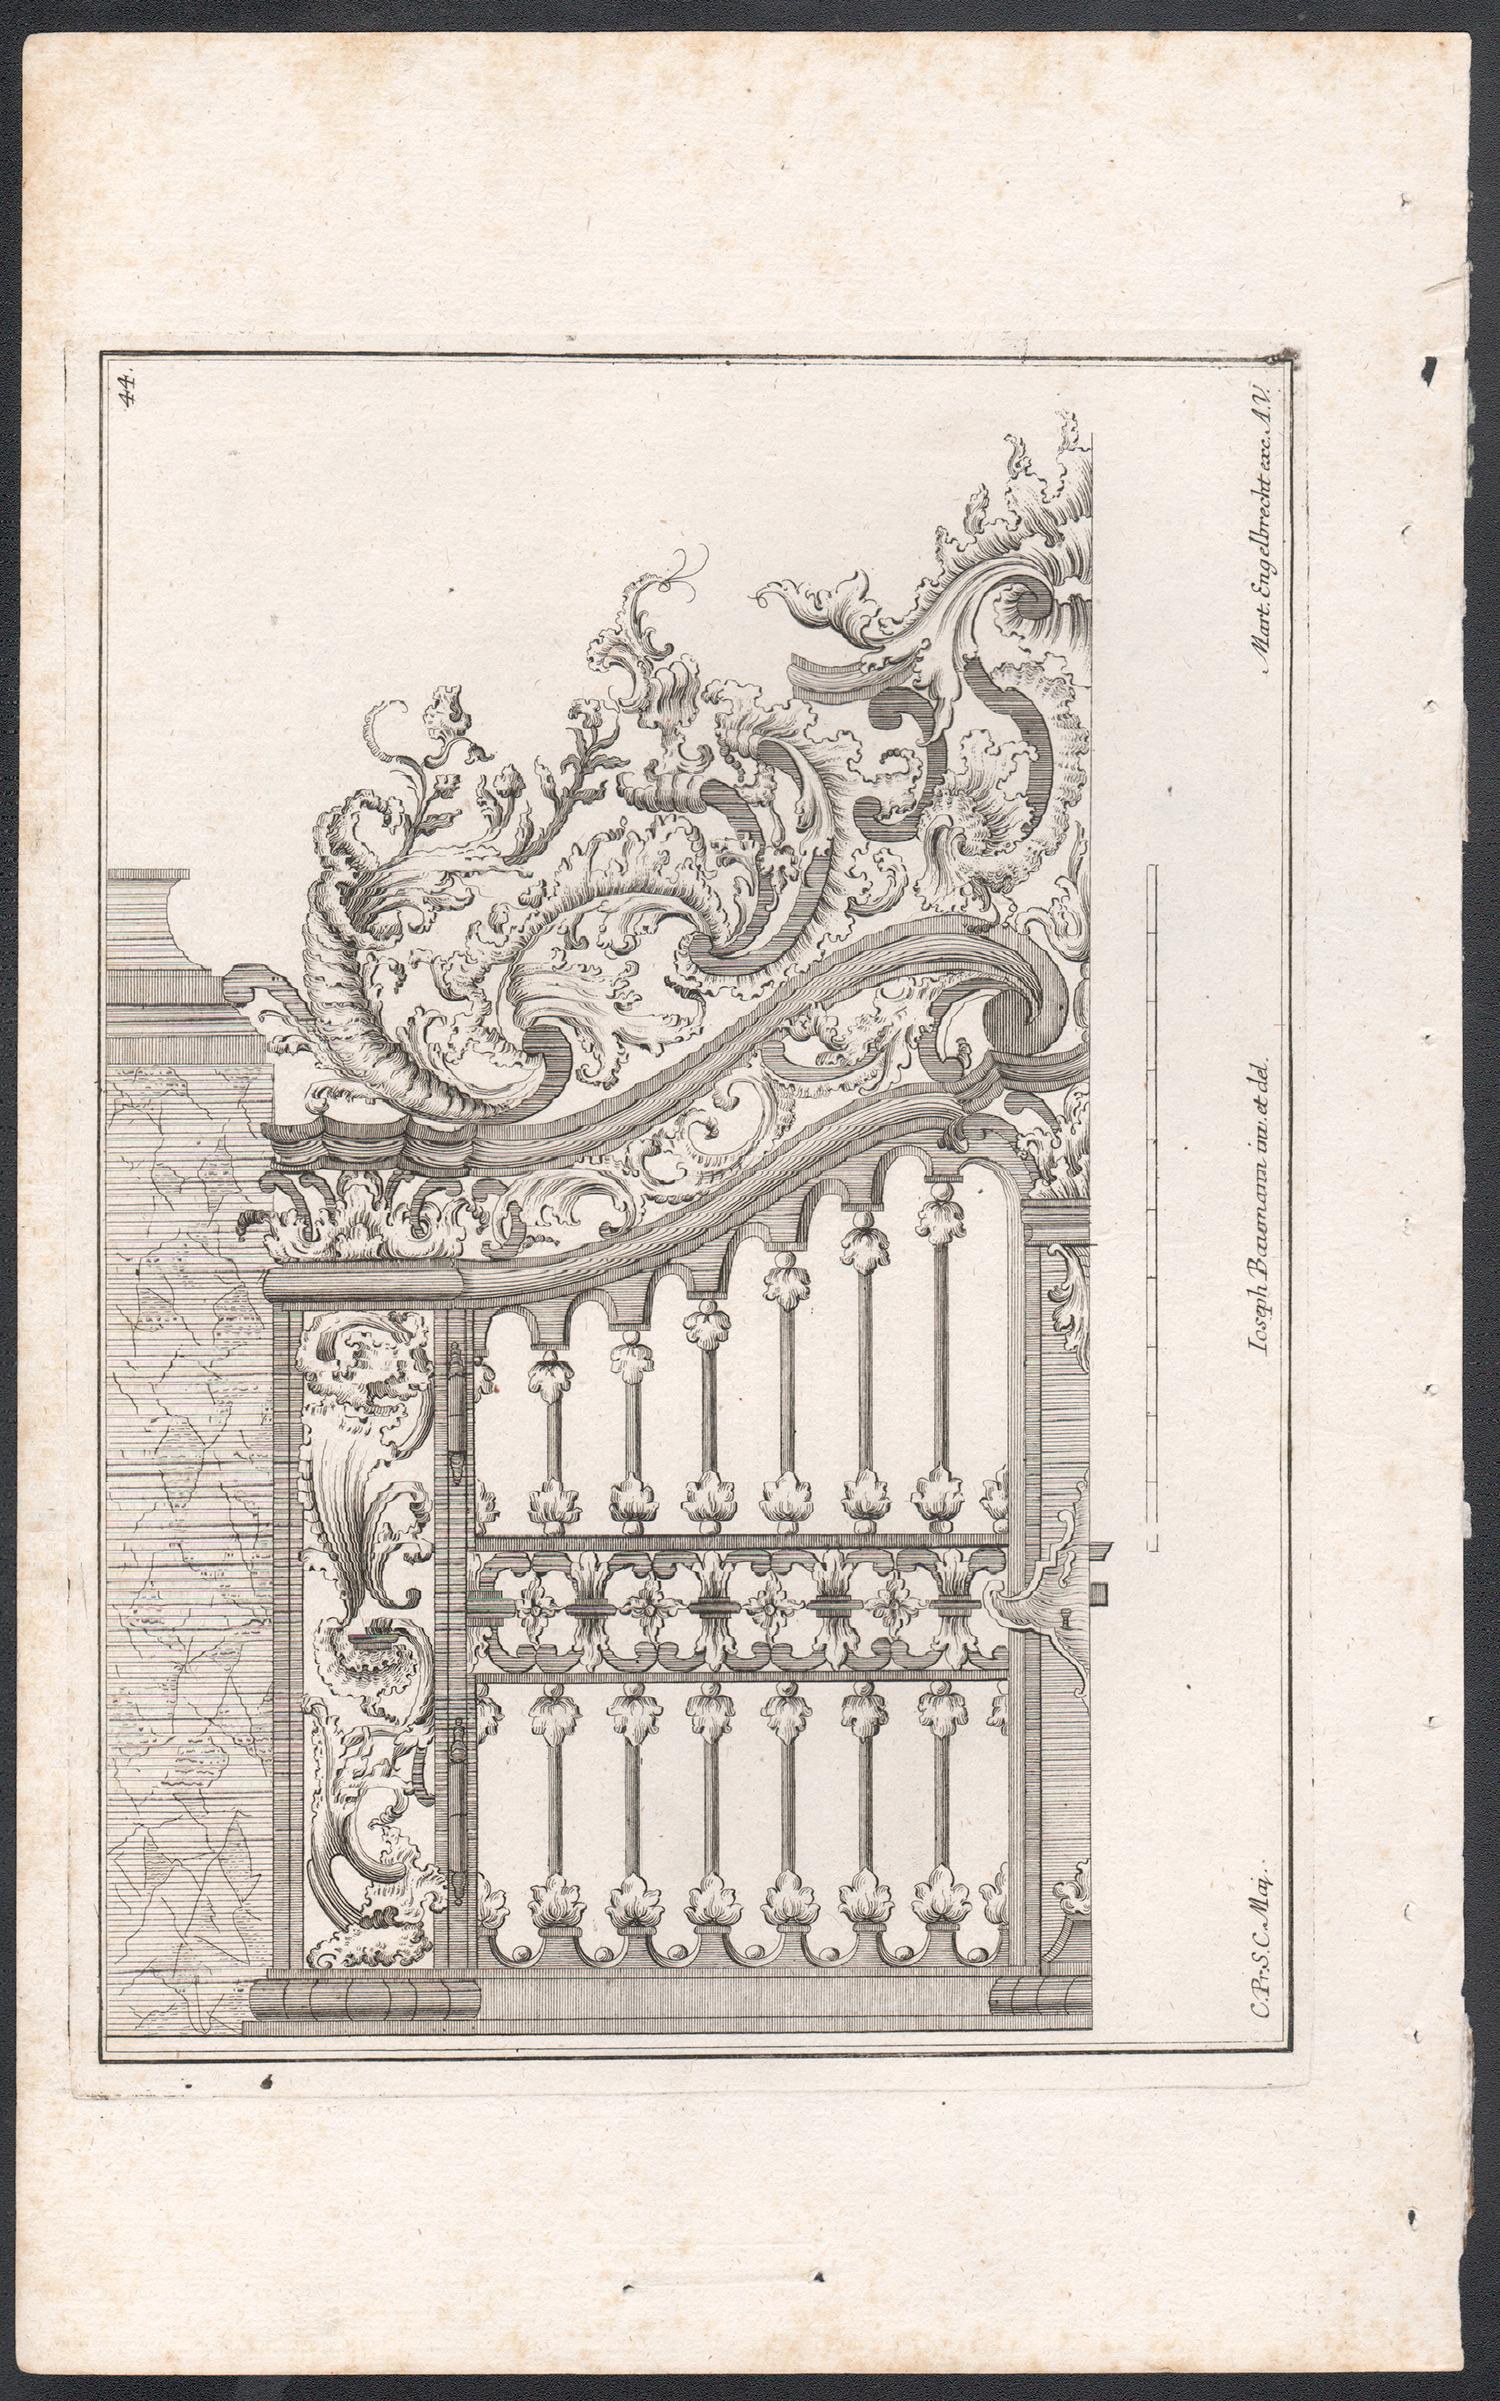 Design rococo pour une porte, gravure allemande du milieu du XVIIIe siècle - Print de Joseph Baumann